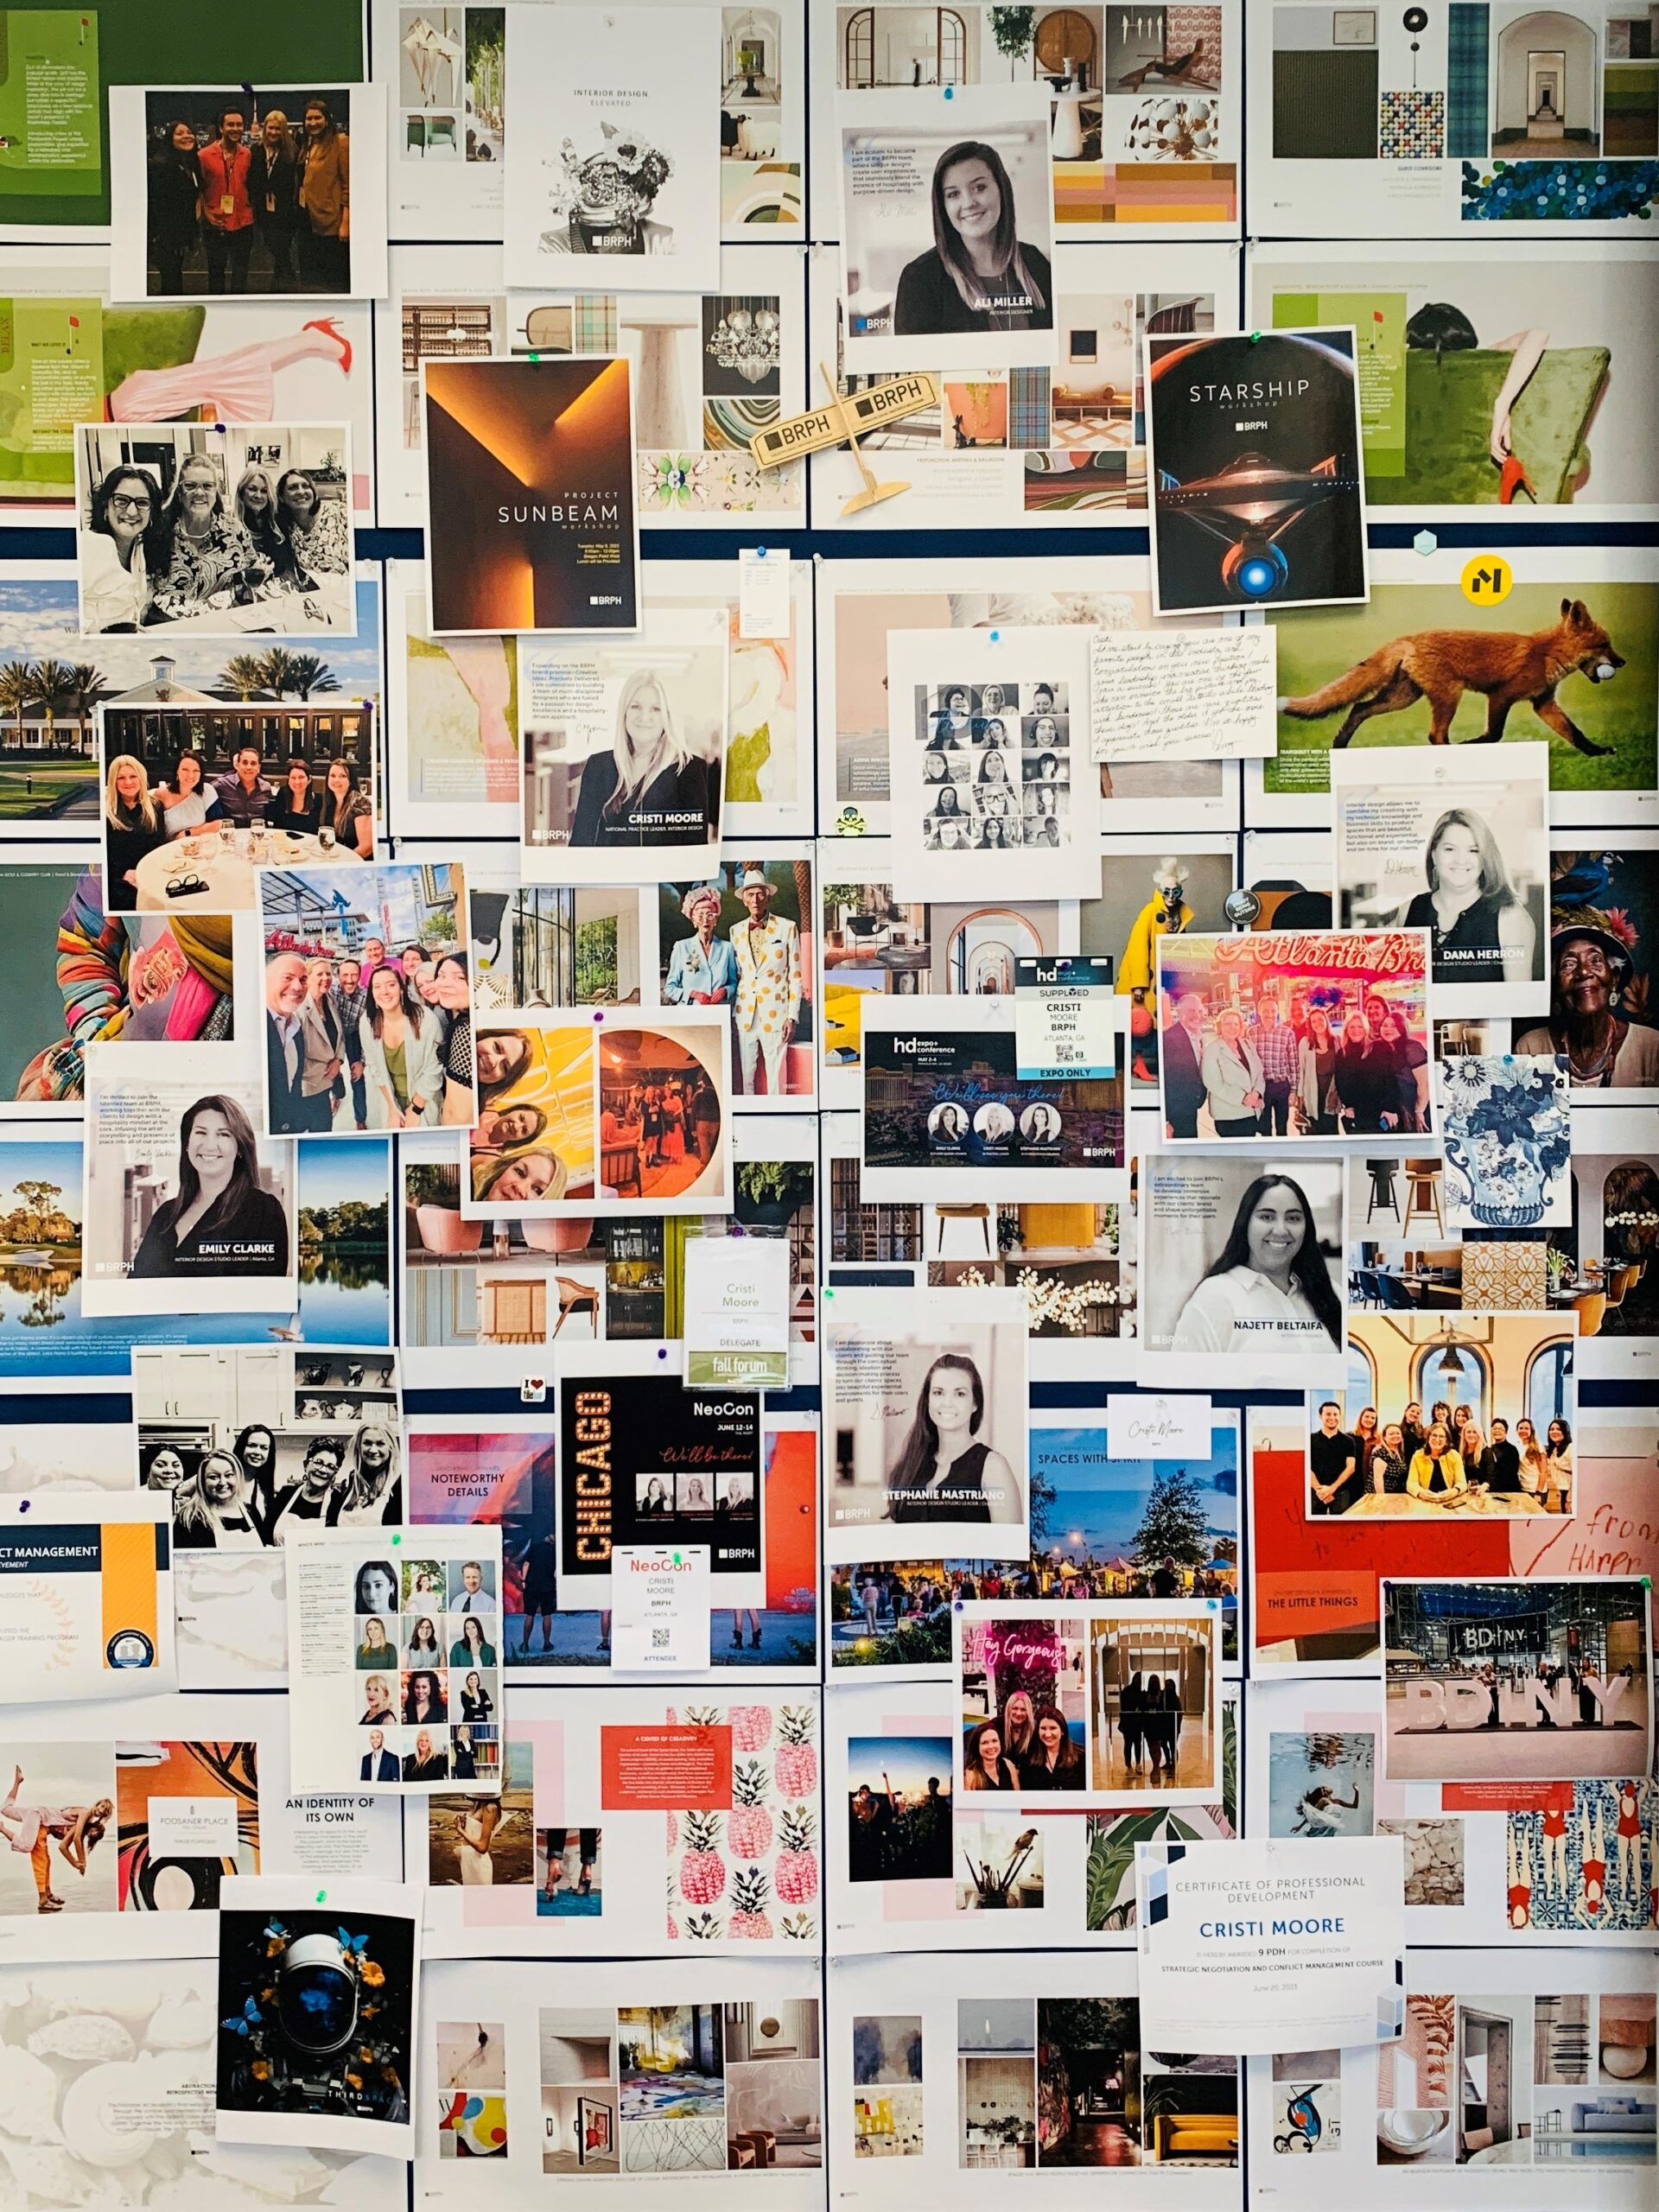 Wall of various photos